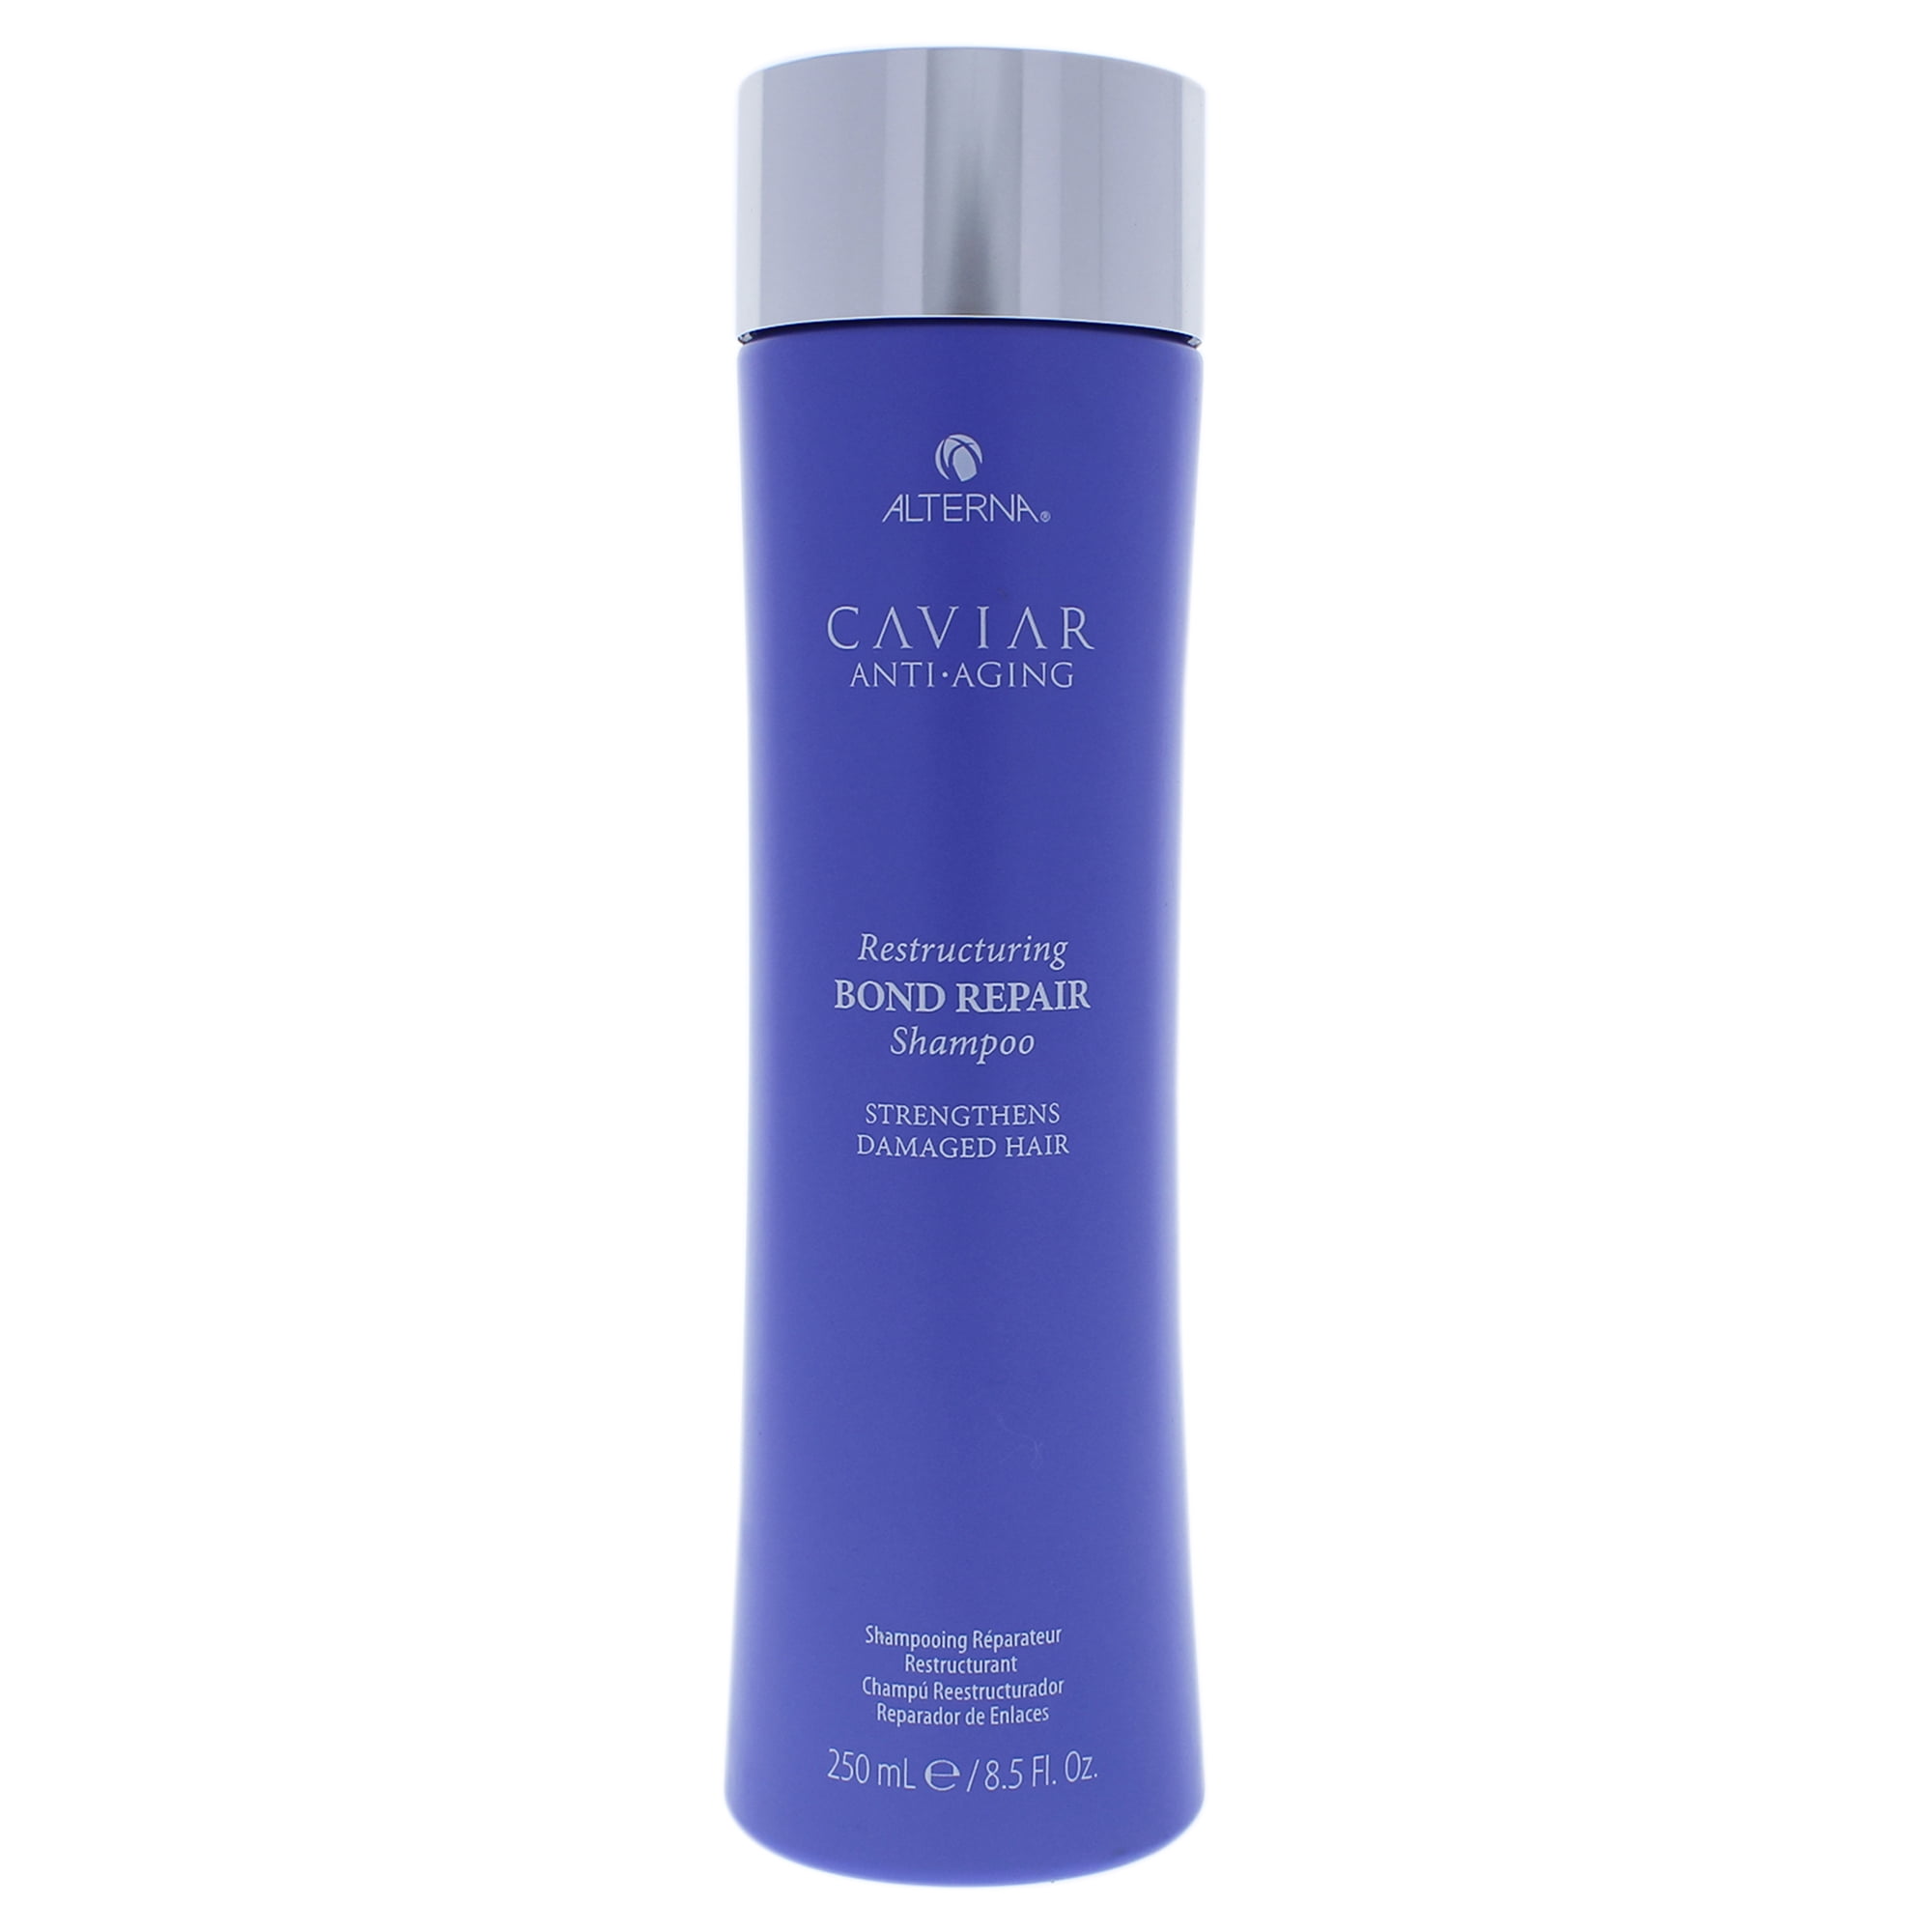 Caviar Shampoo Review - Homecare24